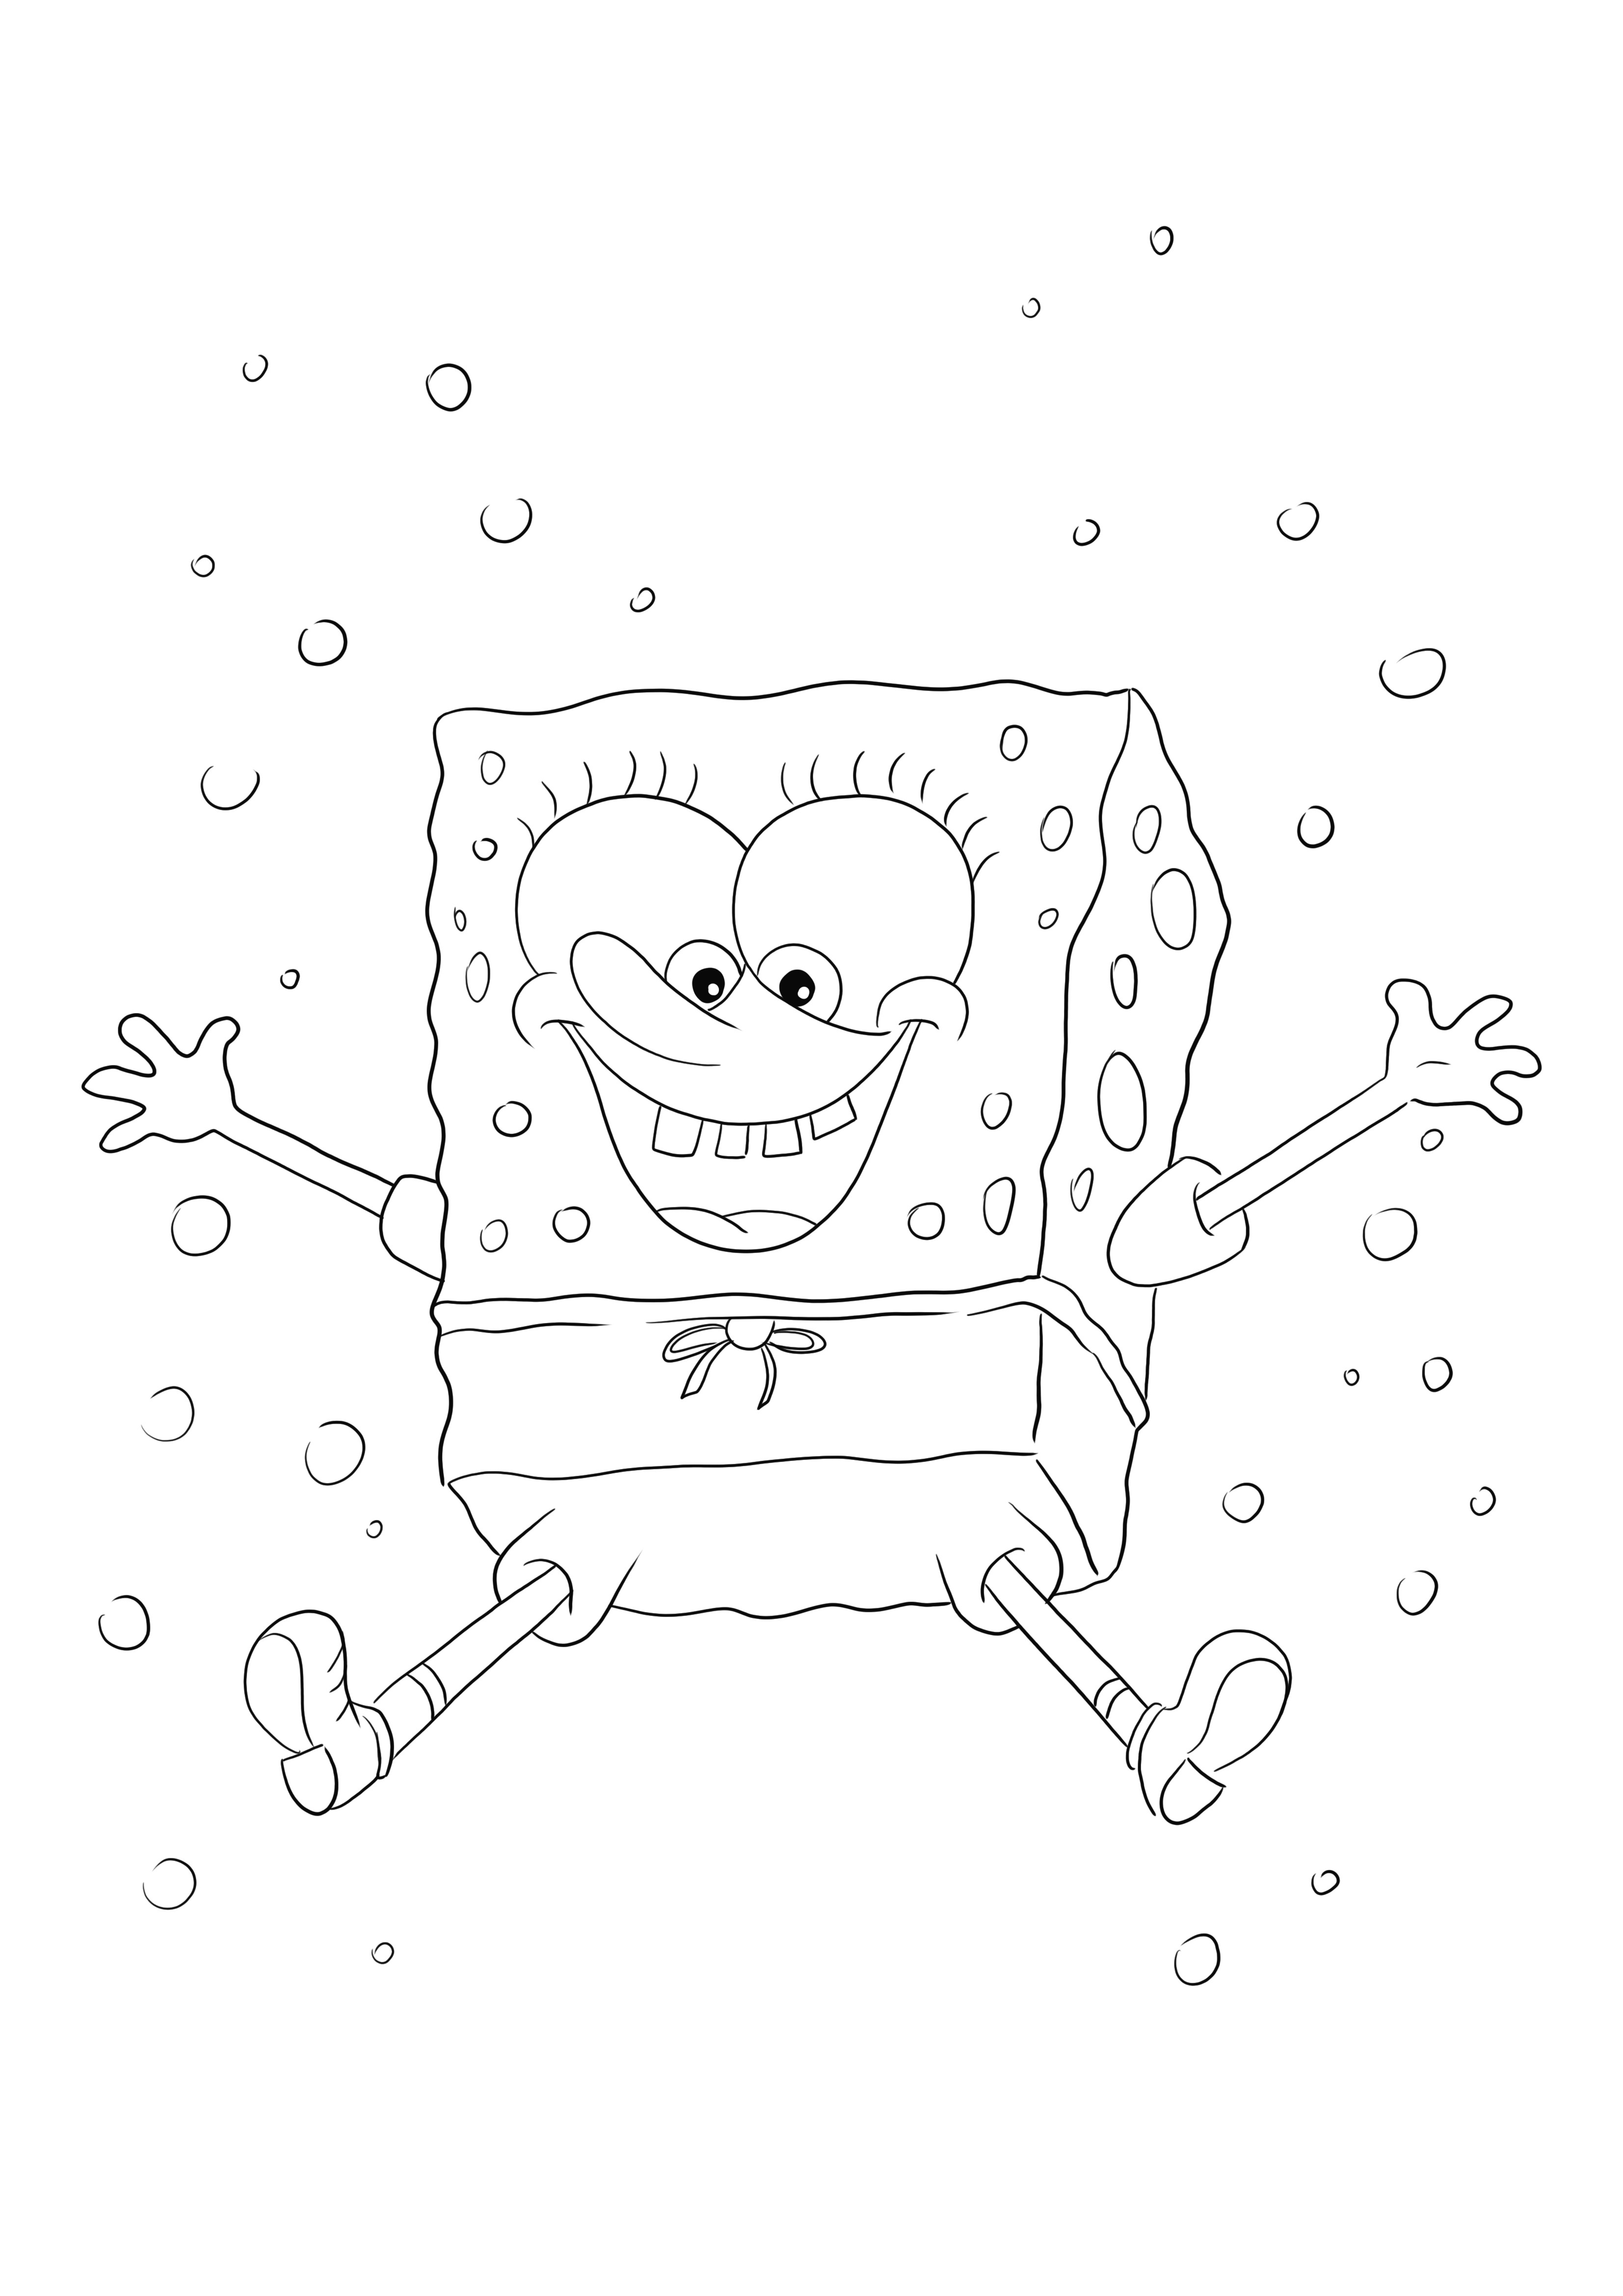 Happy Dancing SpongeBob Squarepants este gratuit pentru a imprima sau a descărca foaia de colorat